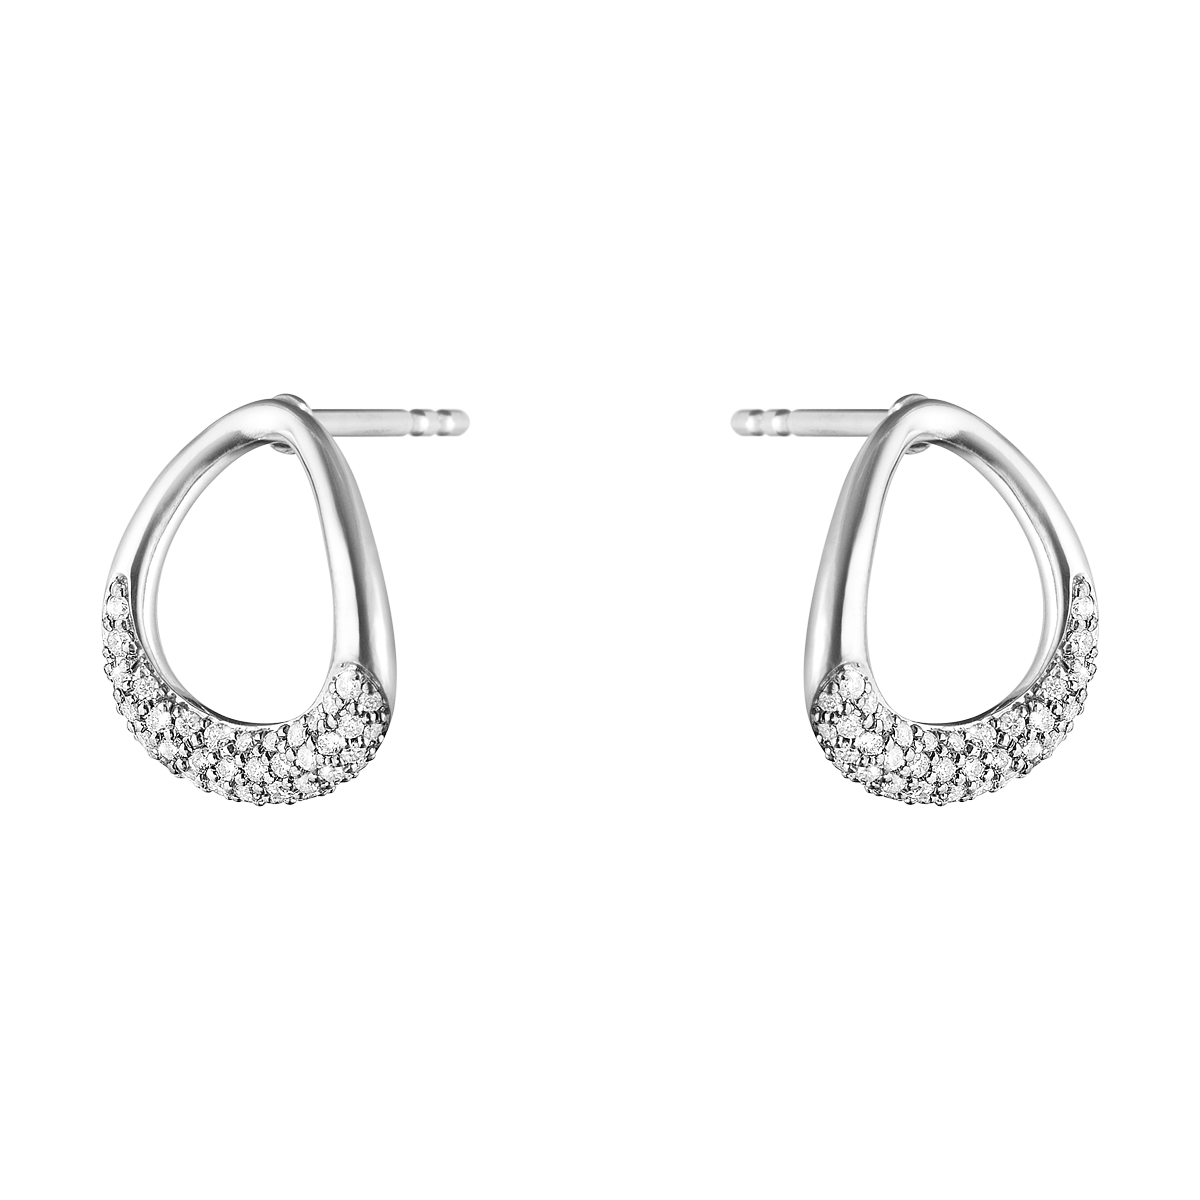 Offspring Earrings I Georg Jensen 